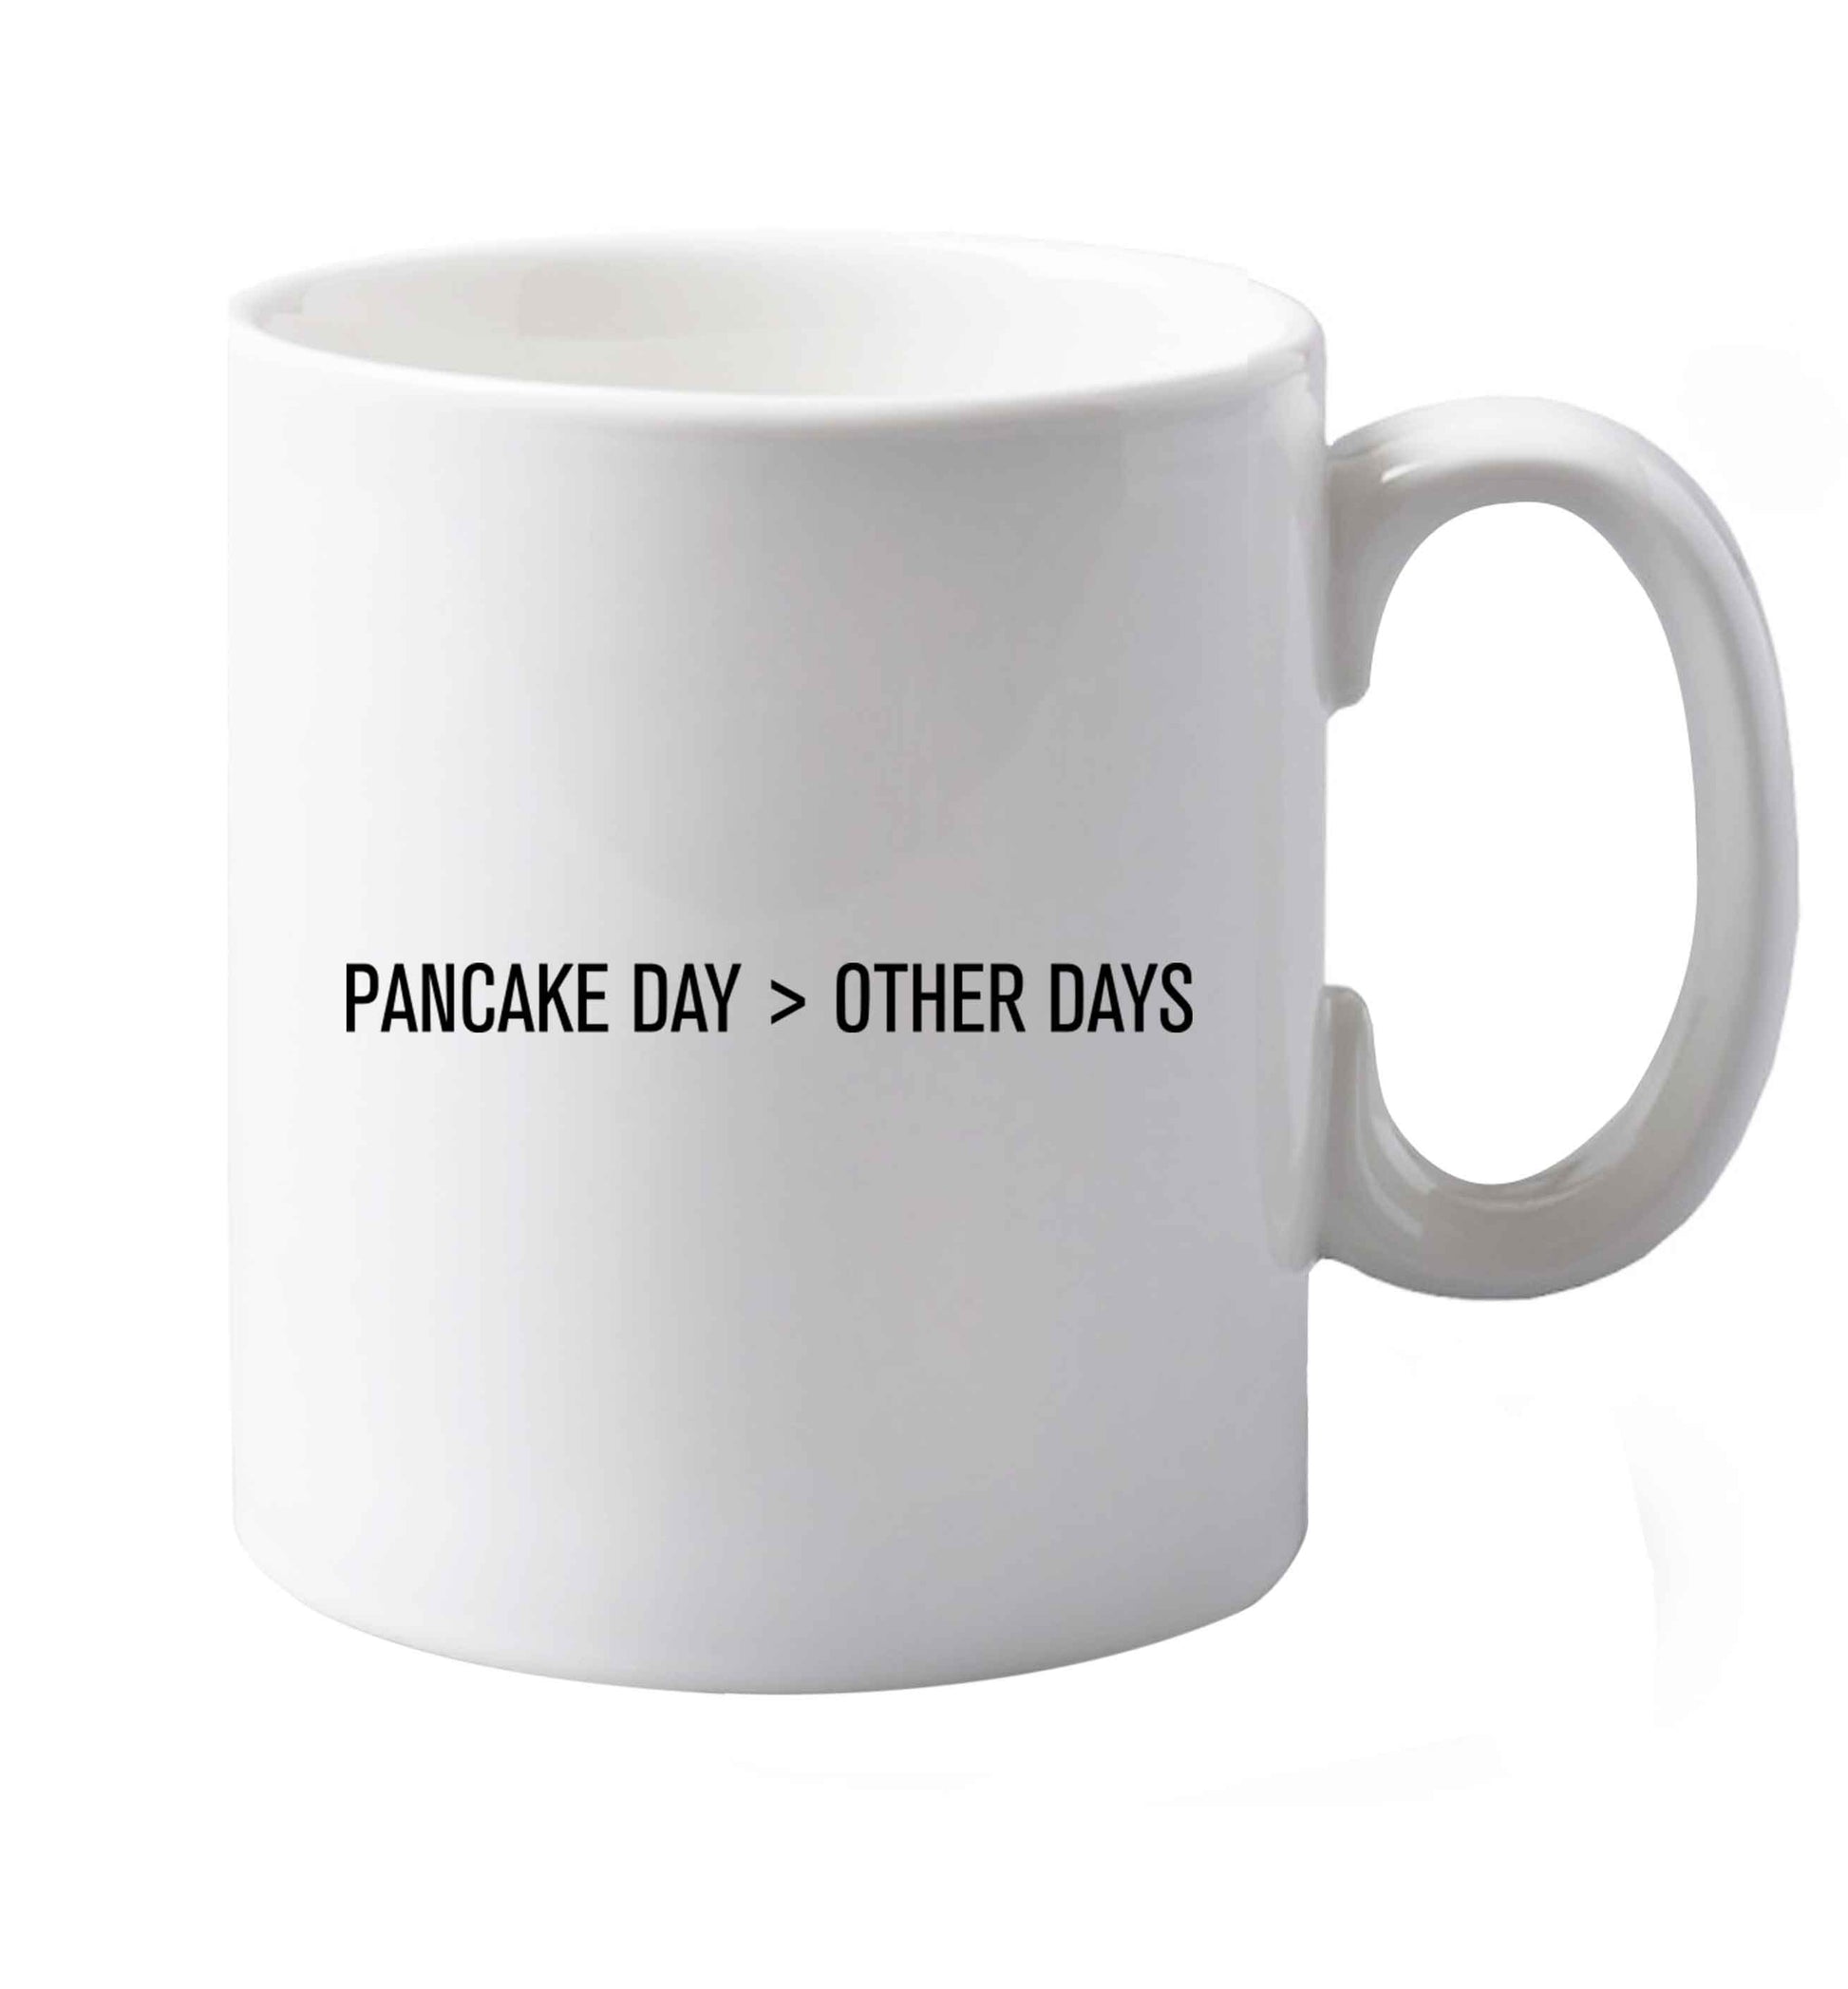 10 oz Pancake Day > Other Days ceramic mug both sides